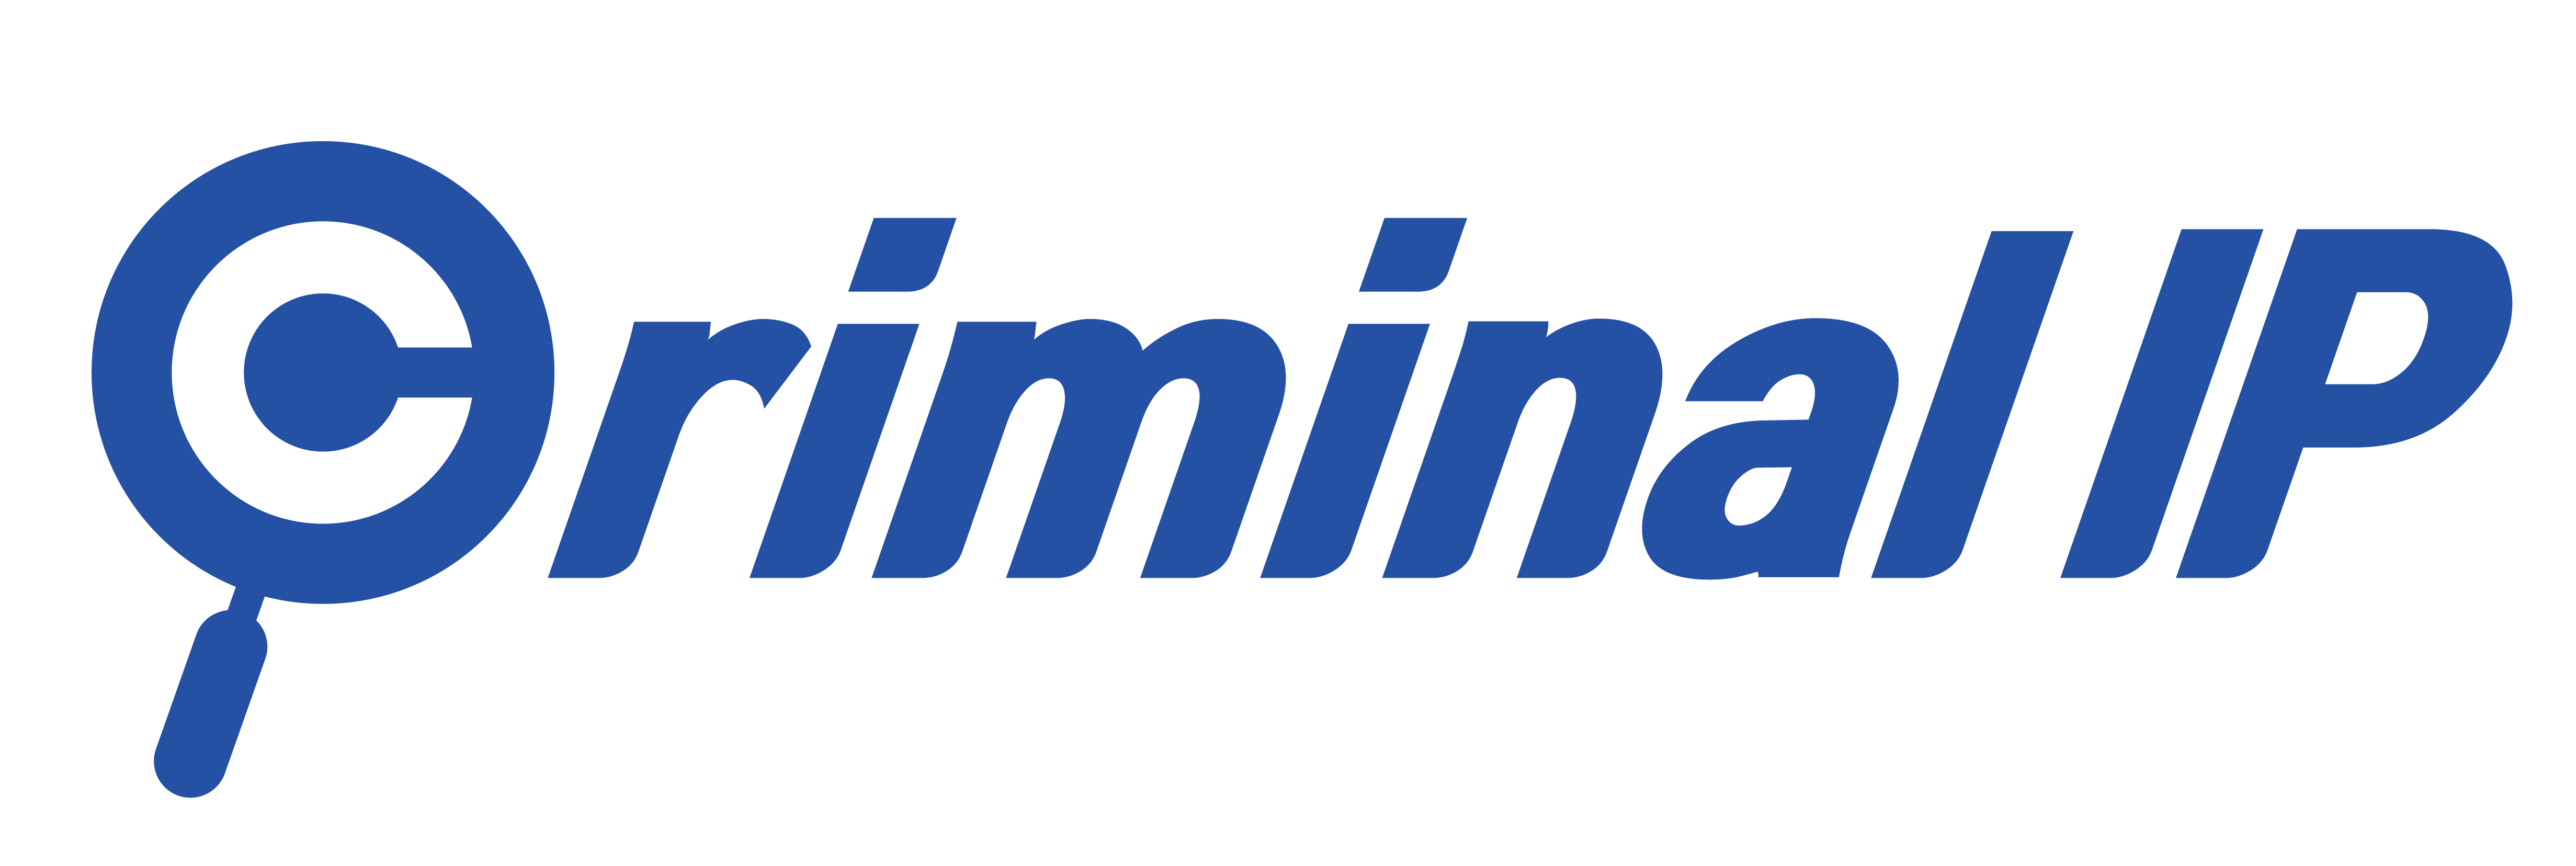 CriminalIP logo